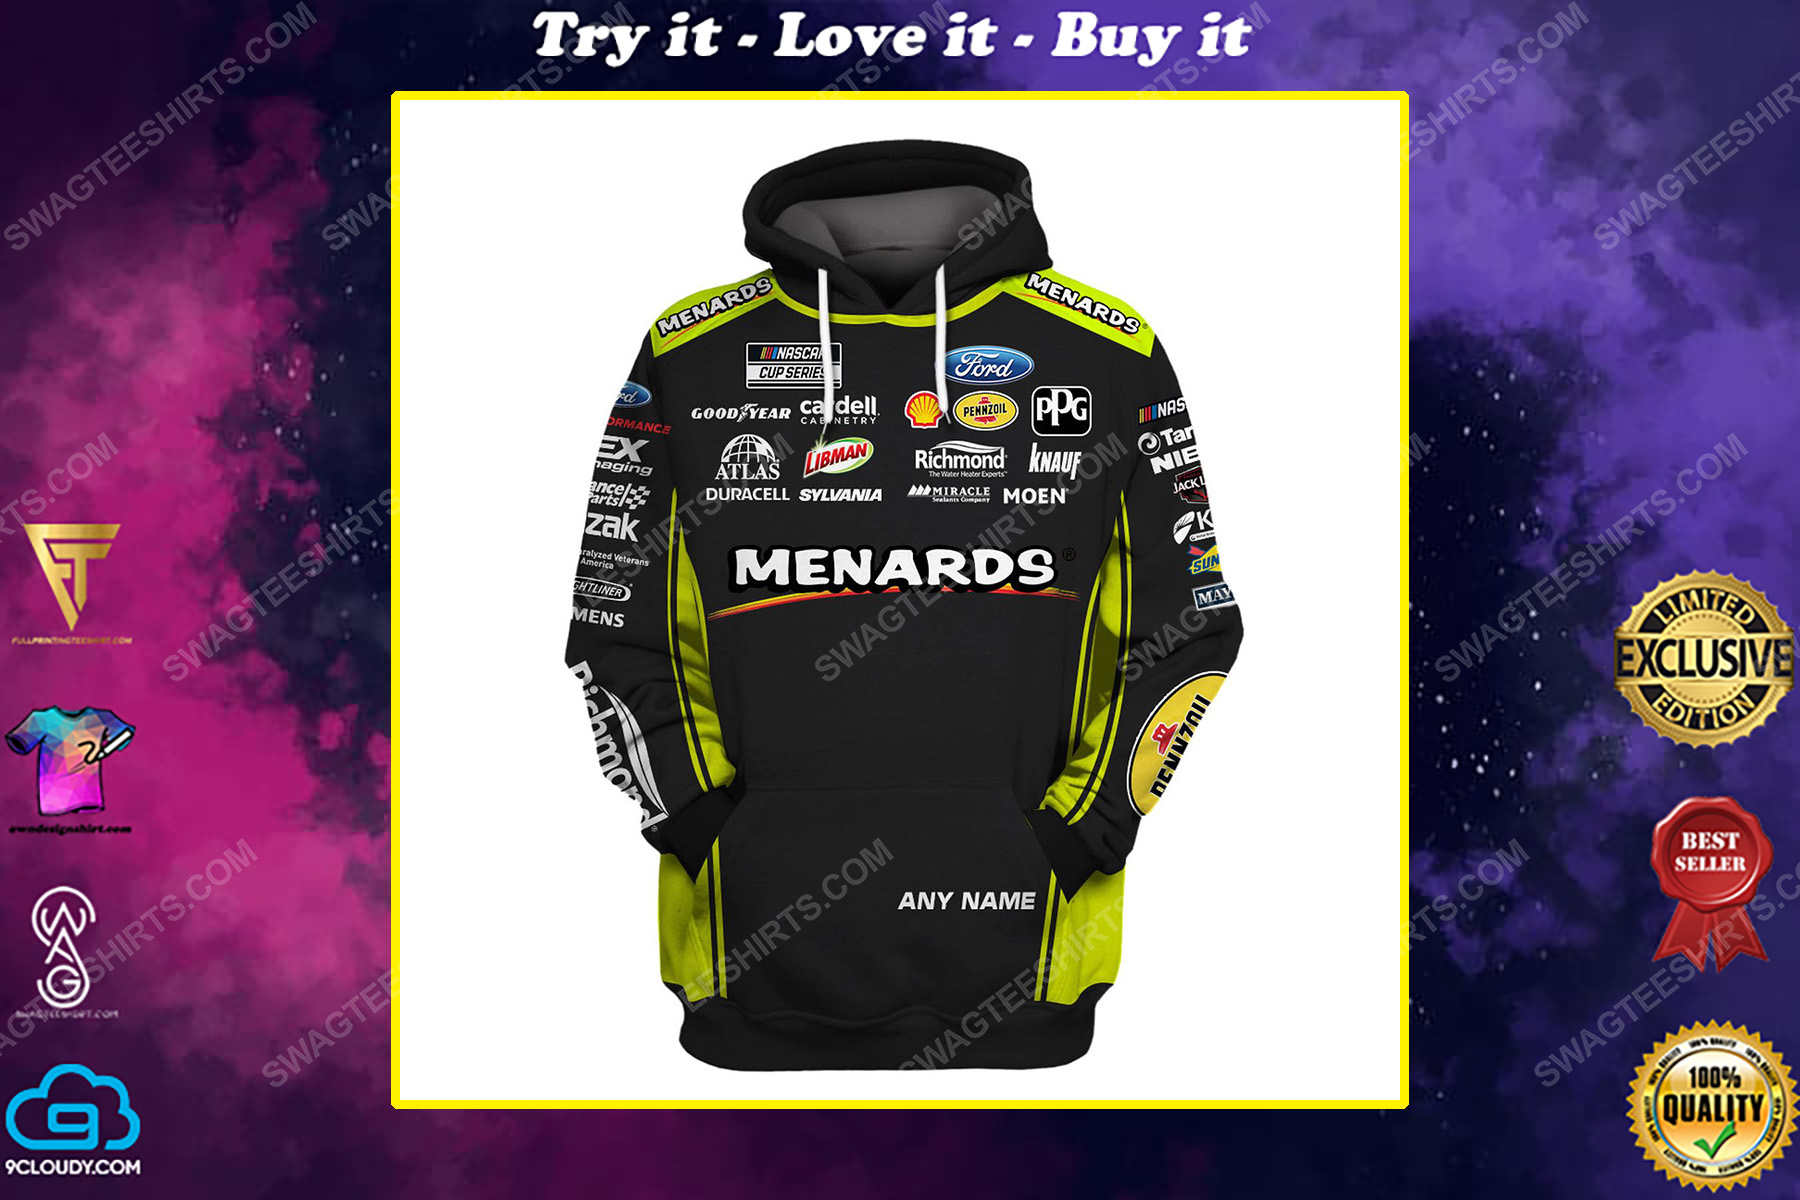 Custom arca menards series racing team motorsport full printing shirt